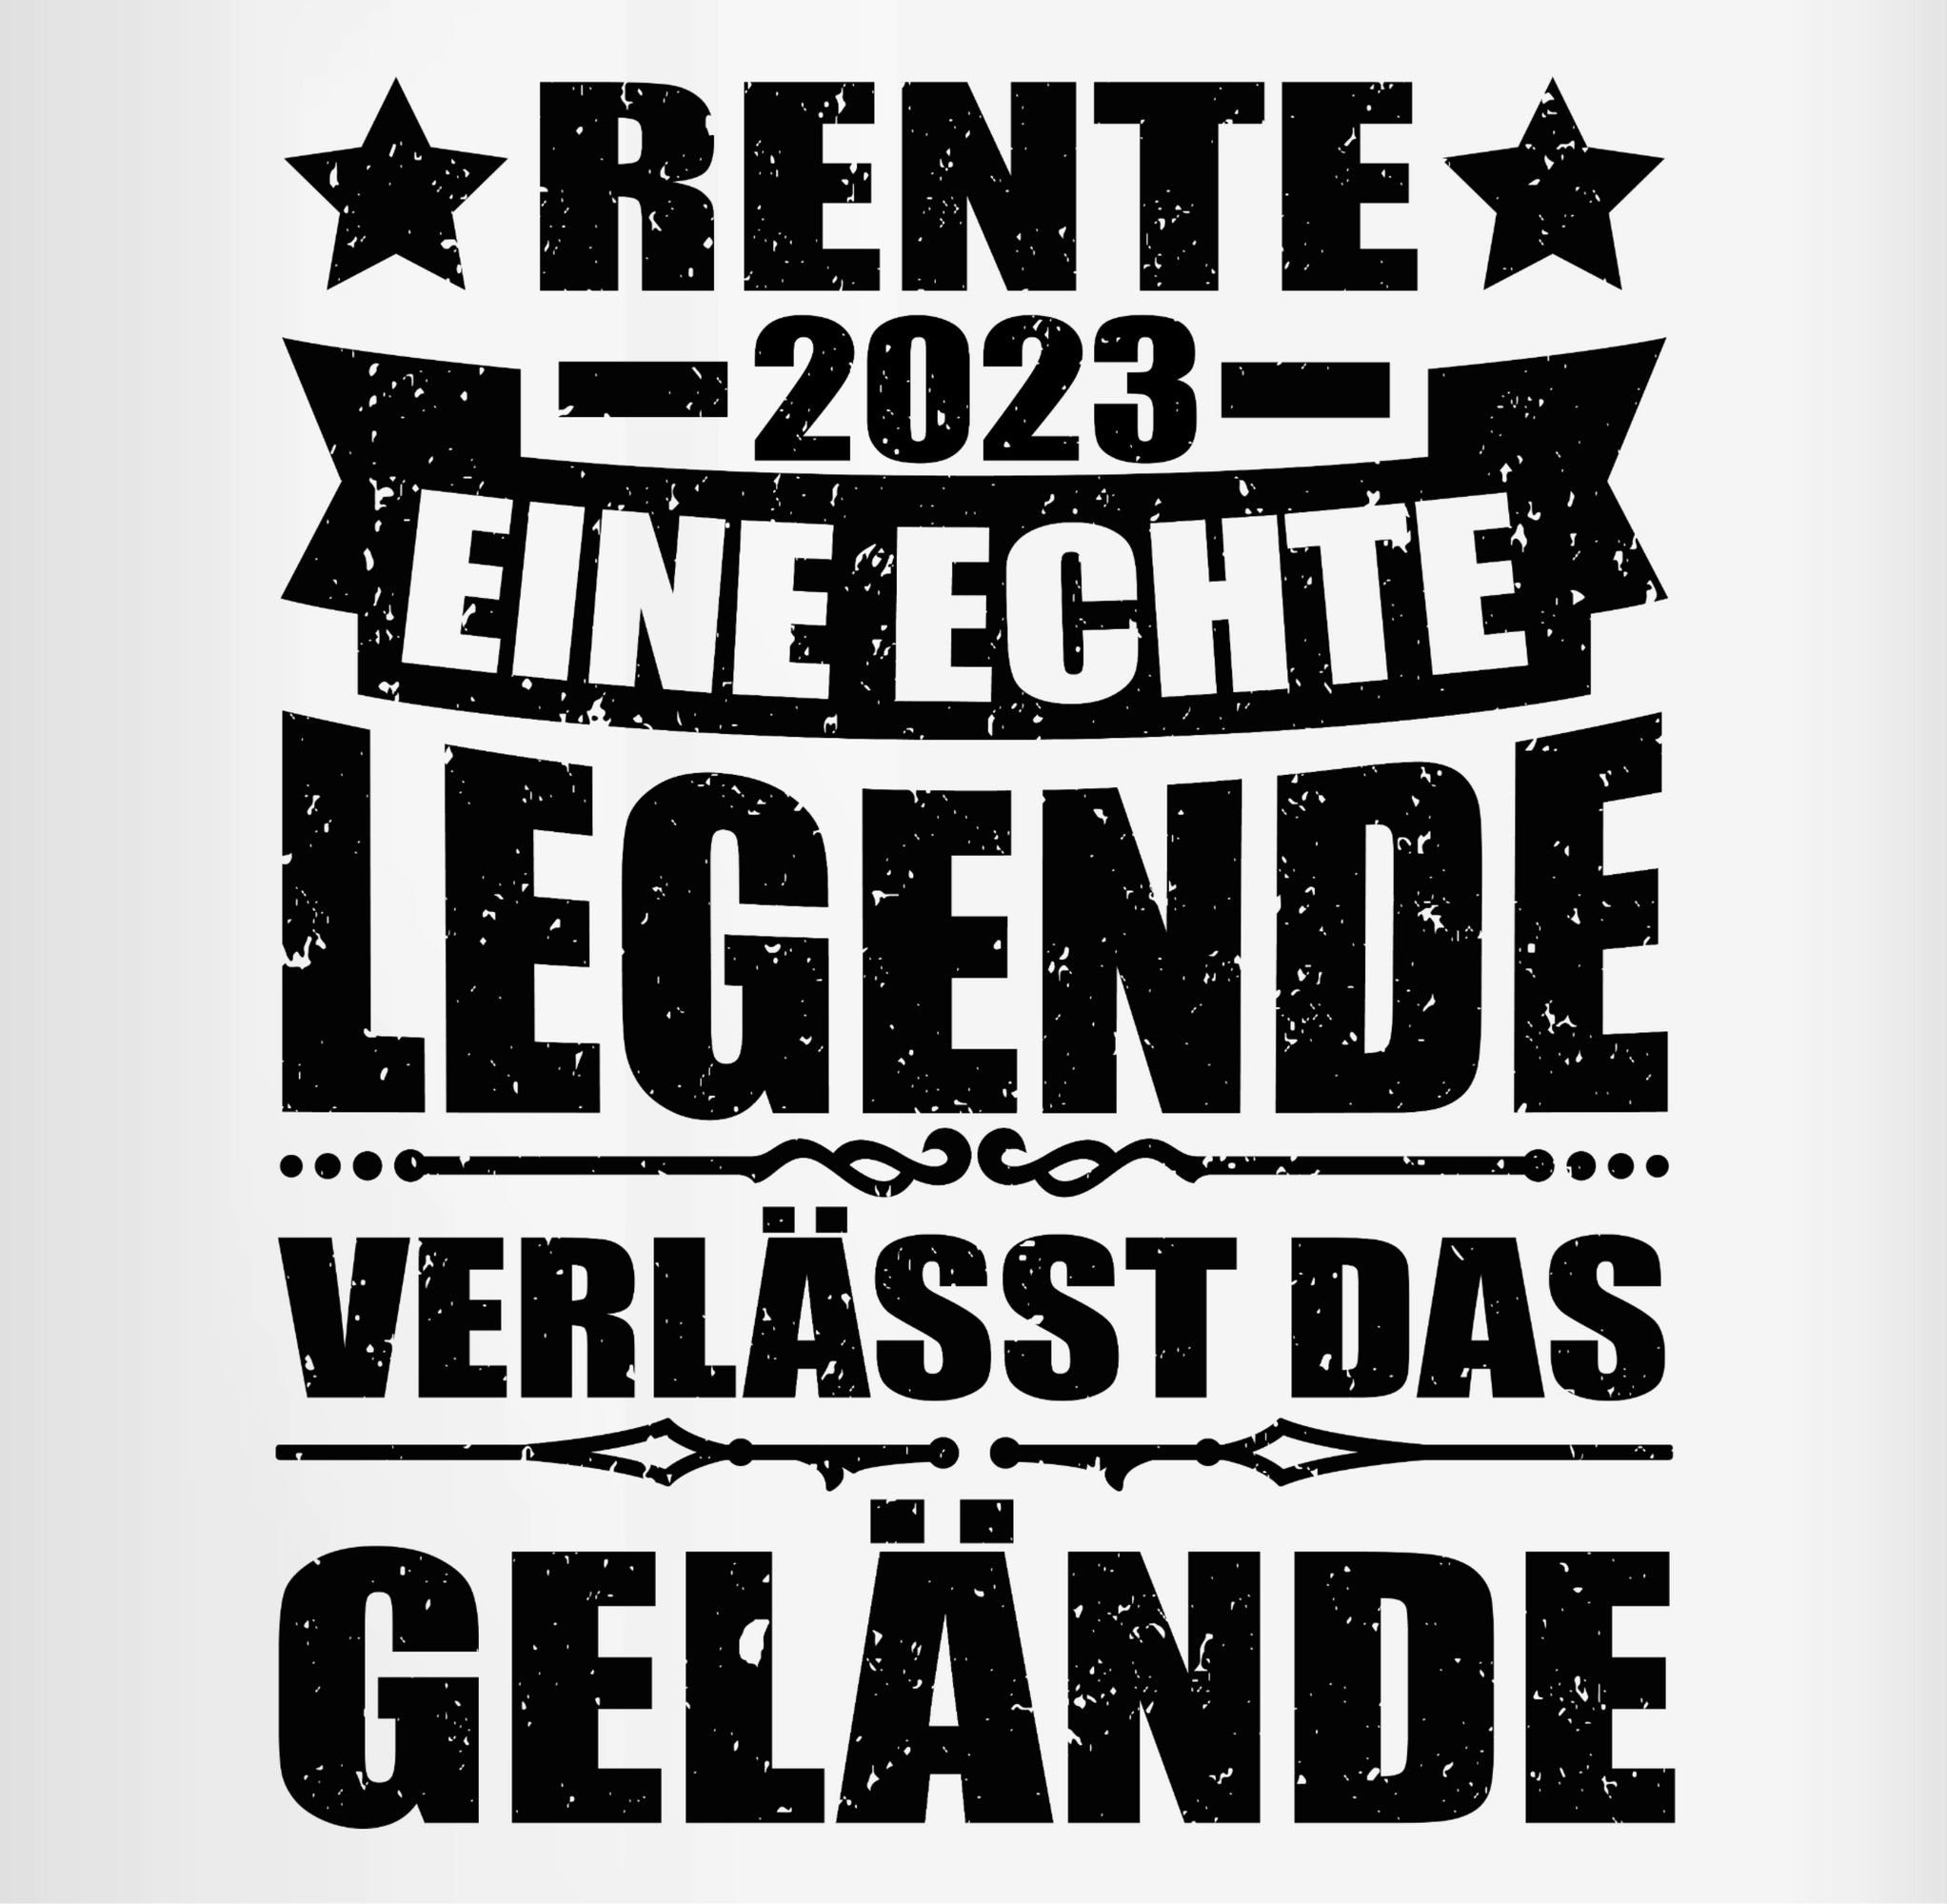 - Legende Rente Tasse Schwarz Gelände, verlässt das Rentnerin Shirtracer 2023 1 Tasse Keramik,